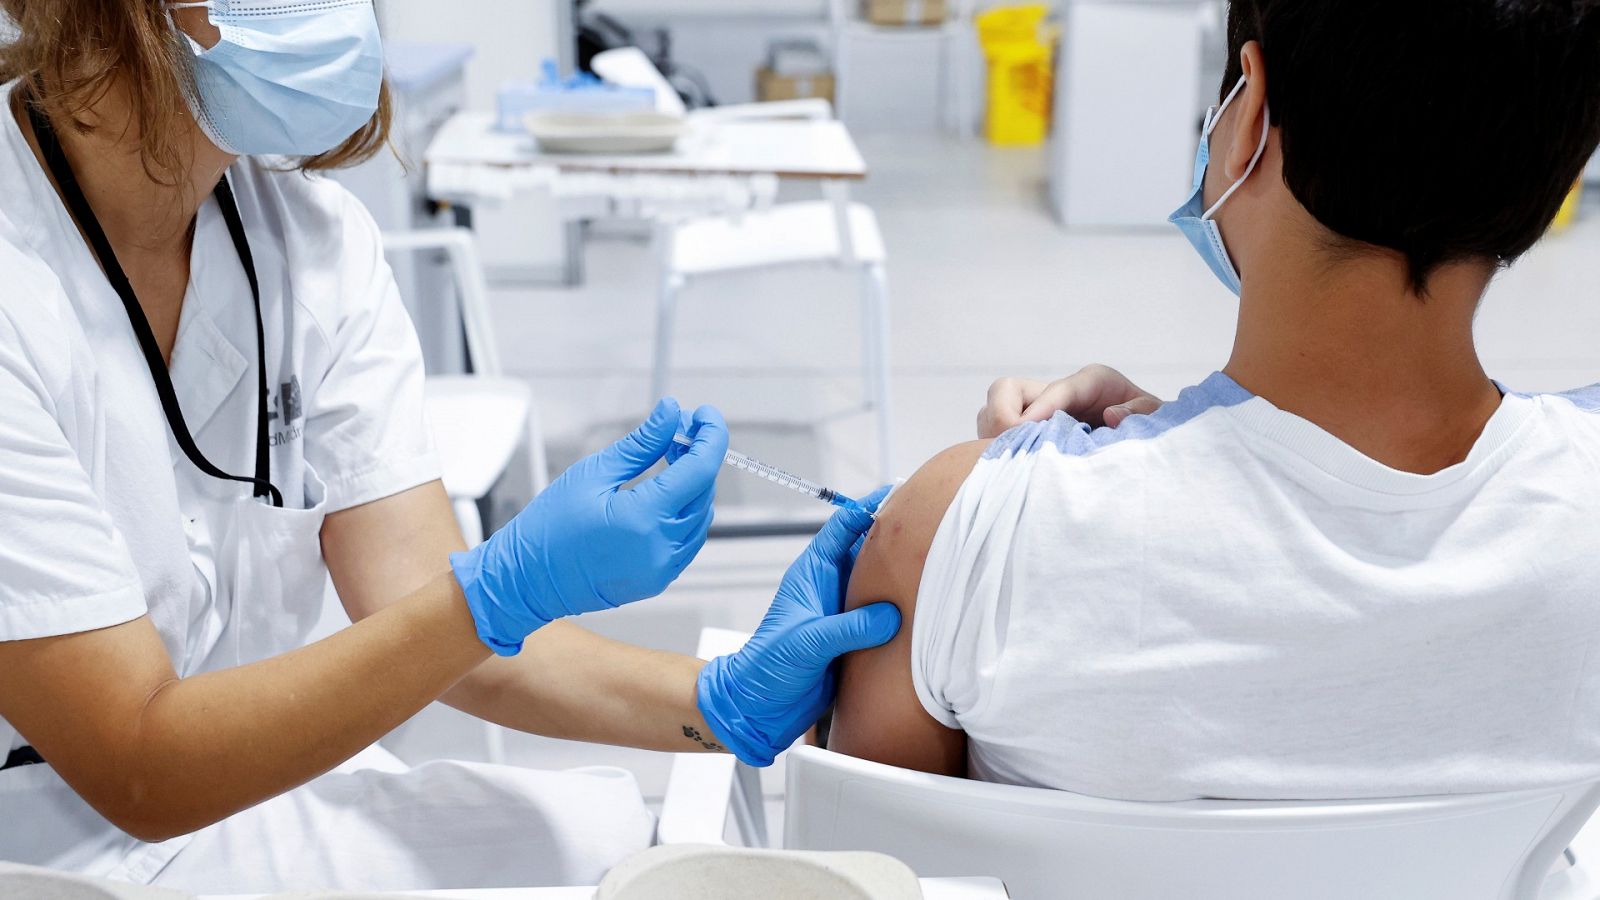 Un adolescente se vacuna contra la COVID-19 en el hospital Enfermera Isabel Zendal de Madrid